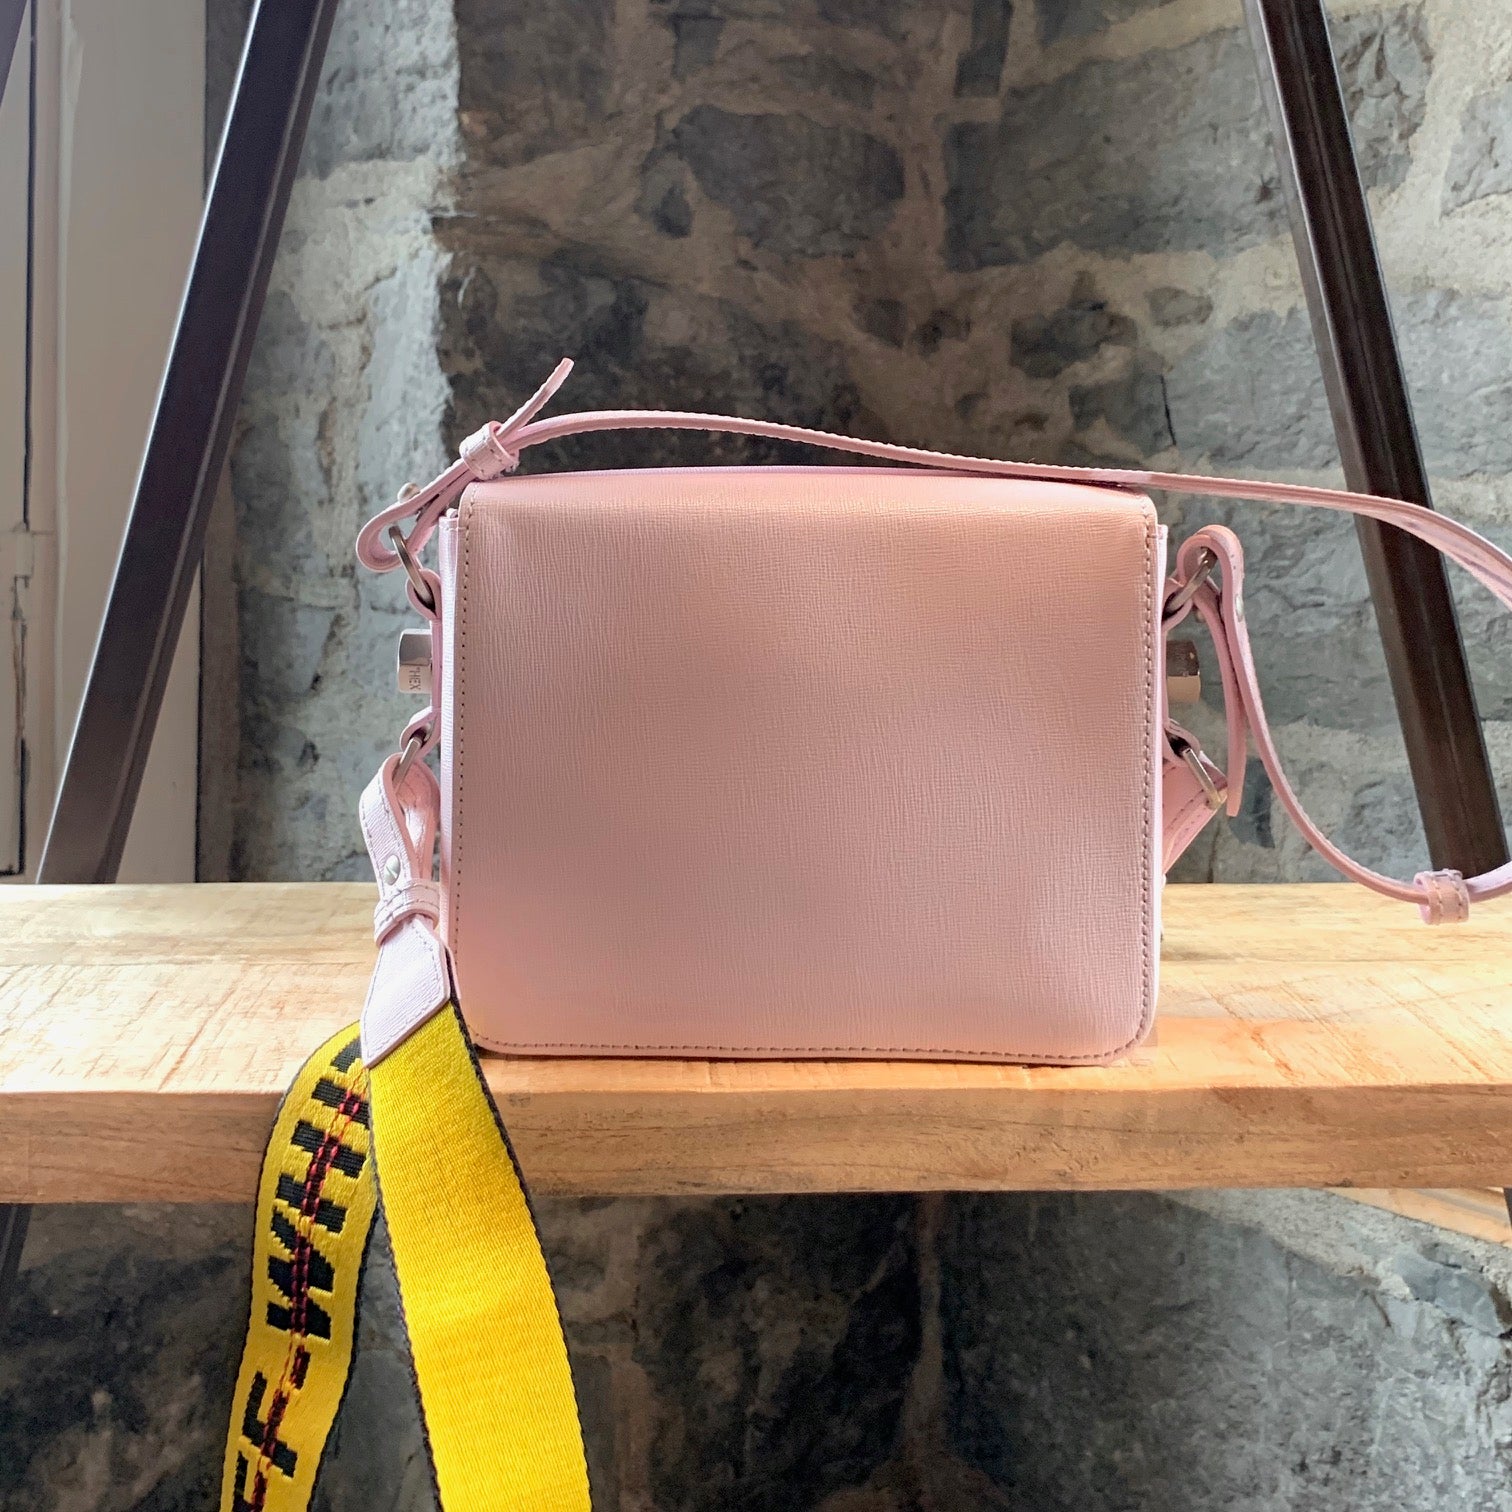 Off-White Pink Binder clip mini leather shoulder bag ($750